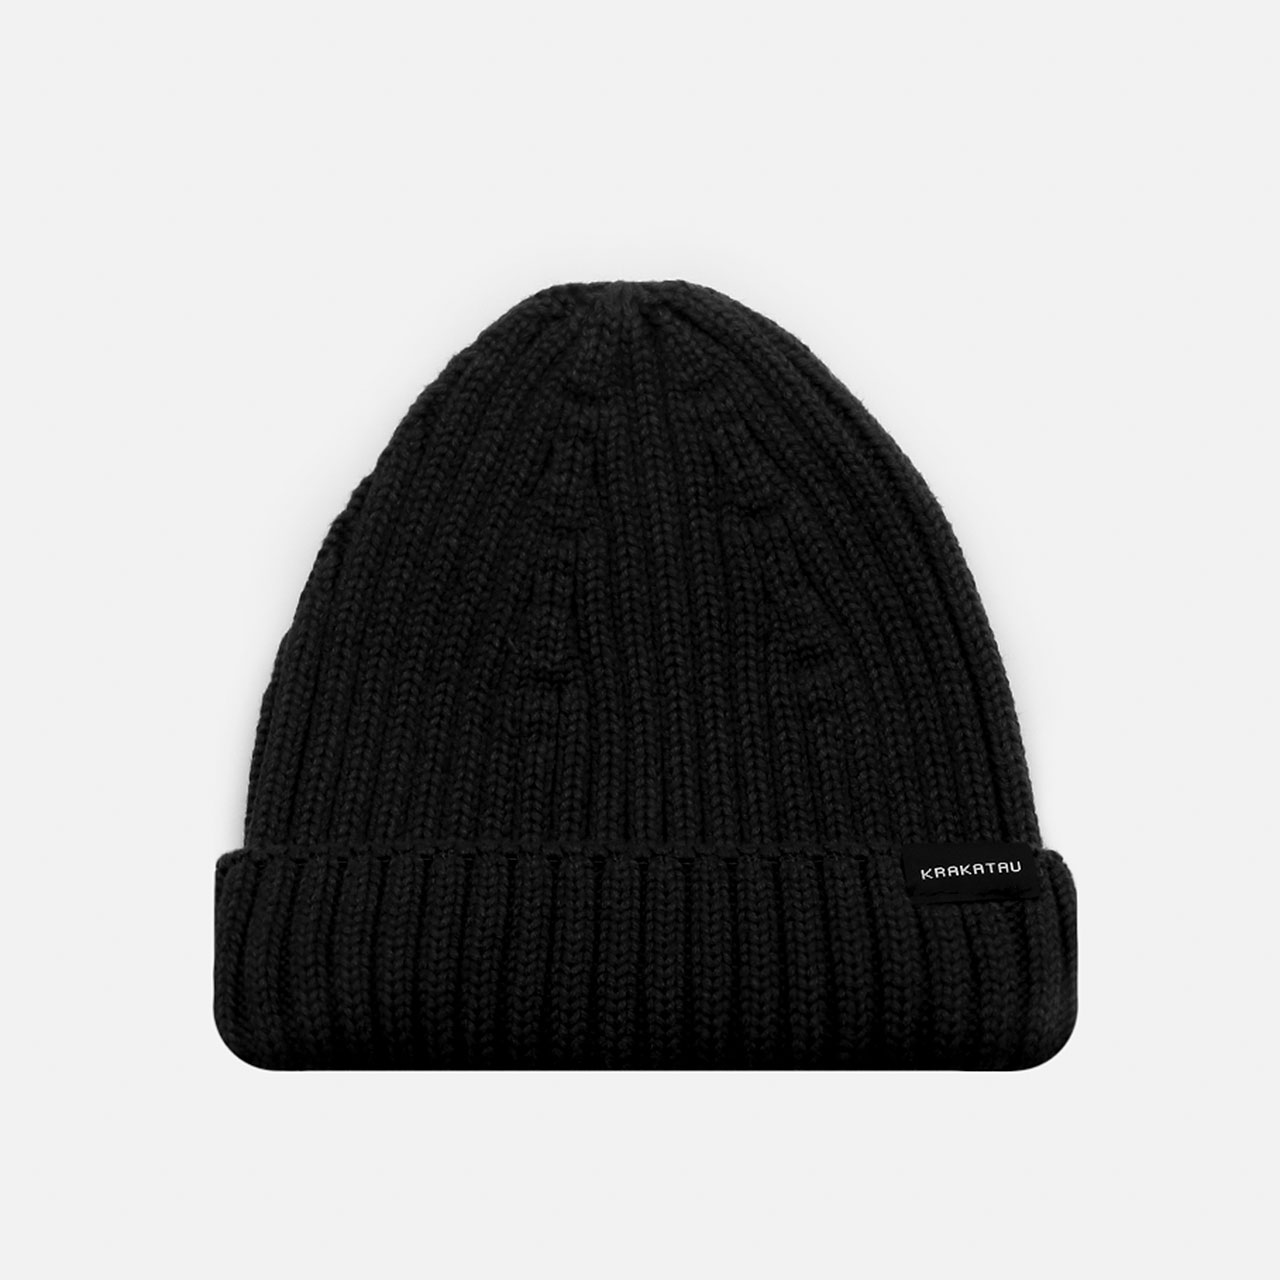 мужская черная шапка KRAKATAU PU38-1 Pu38-1-black - цена, описание, фото 1